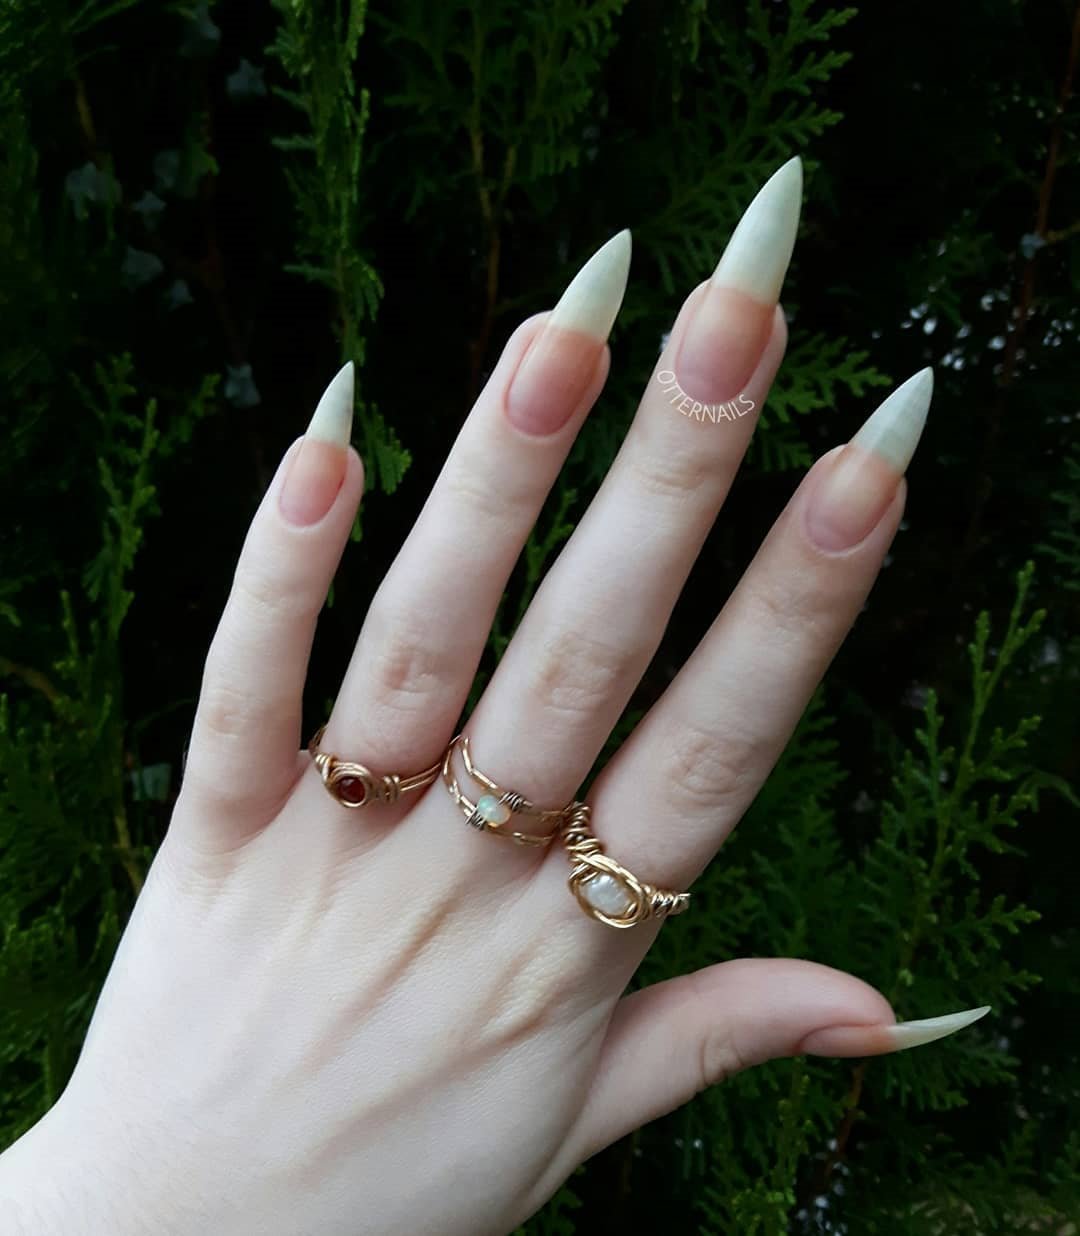 acrylic nails shapes stiletto pinky